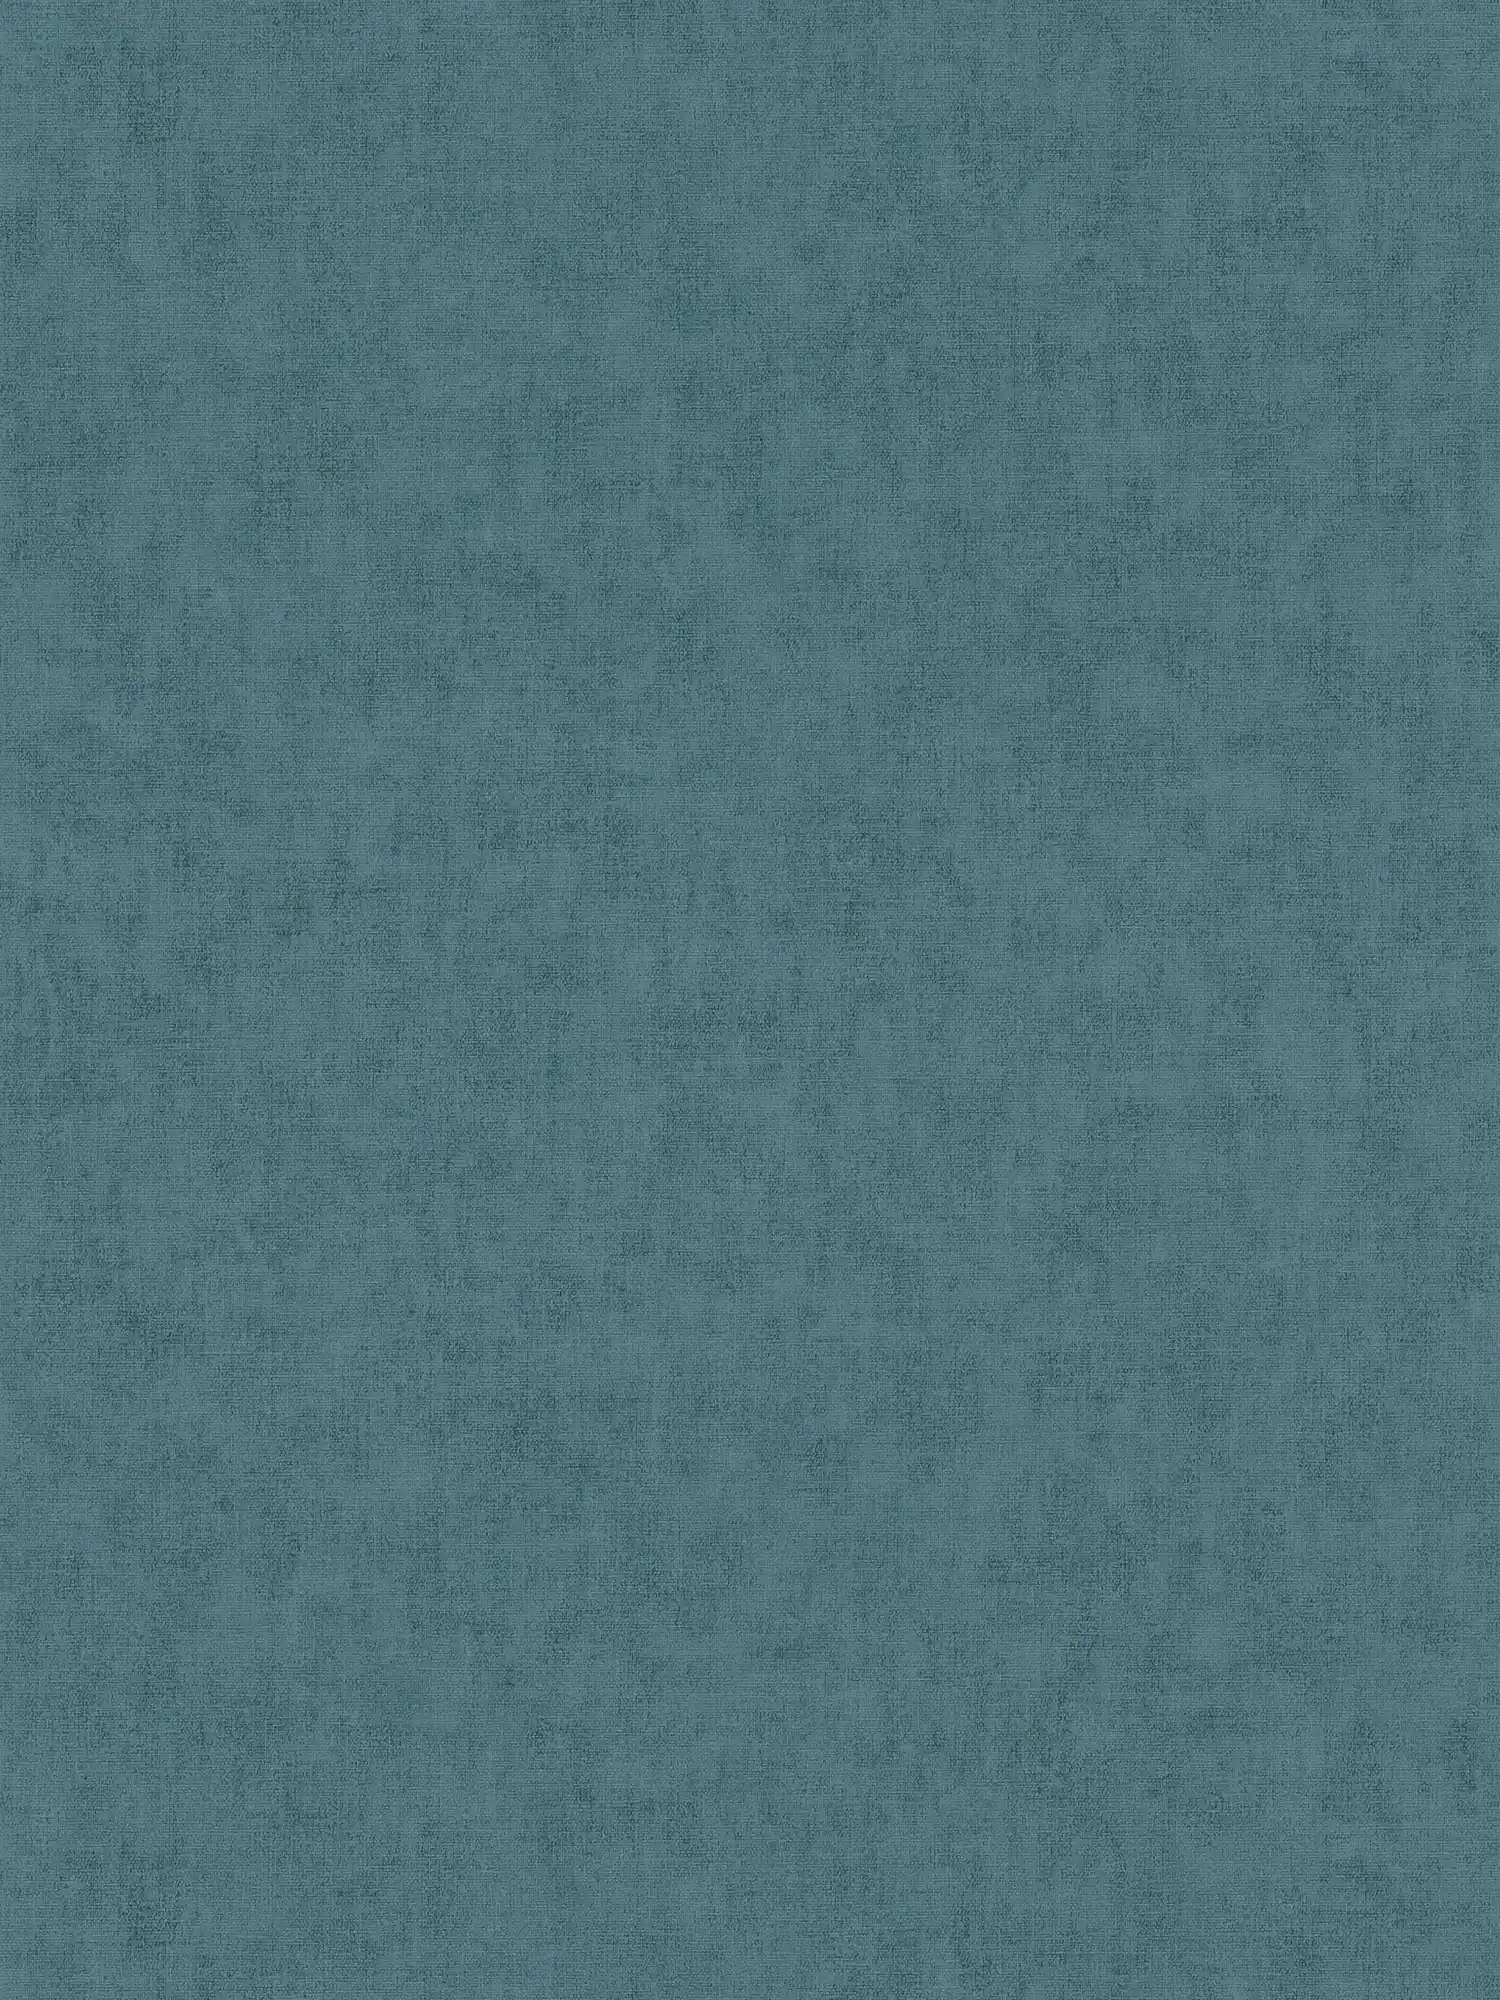 Non-woven wallpaper textile look Scandinavian style - blue, grey
